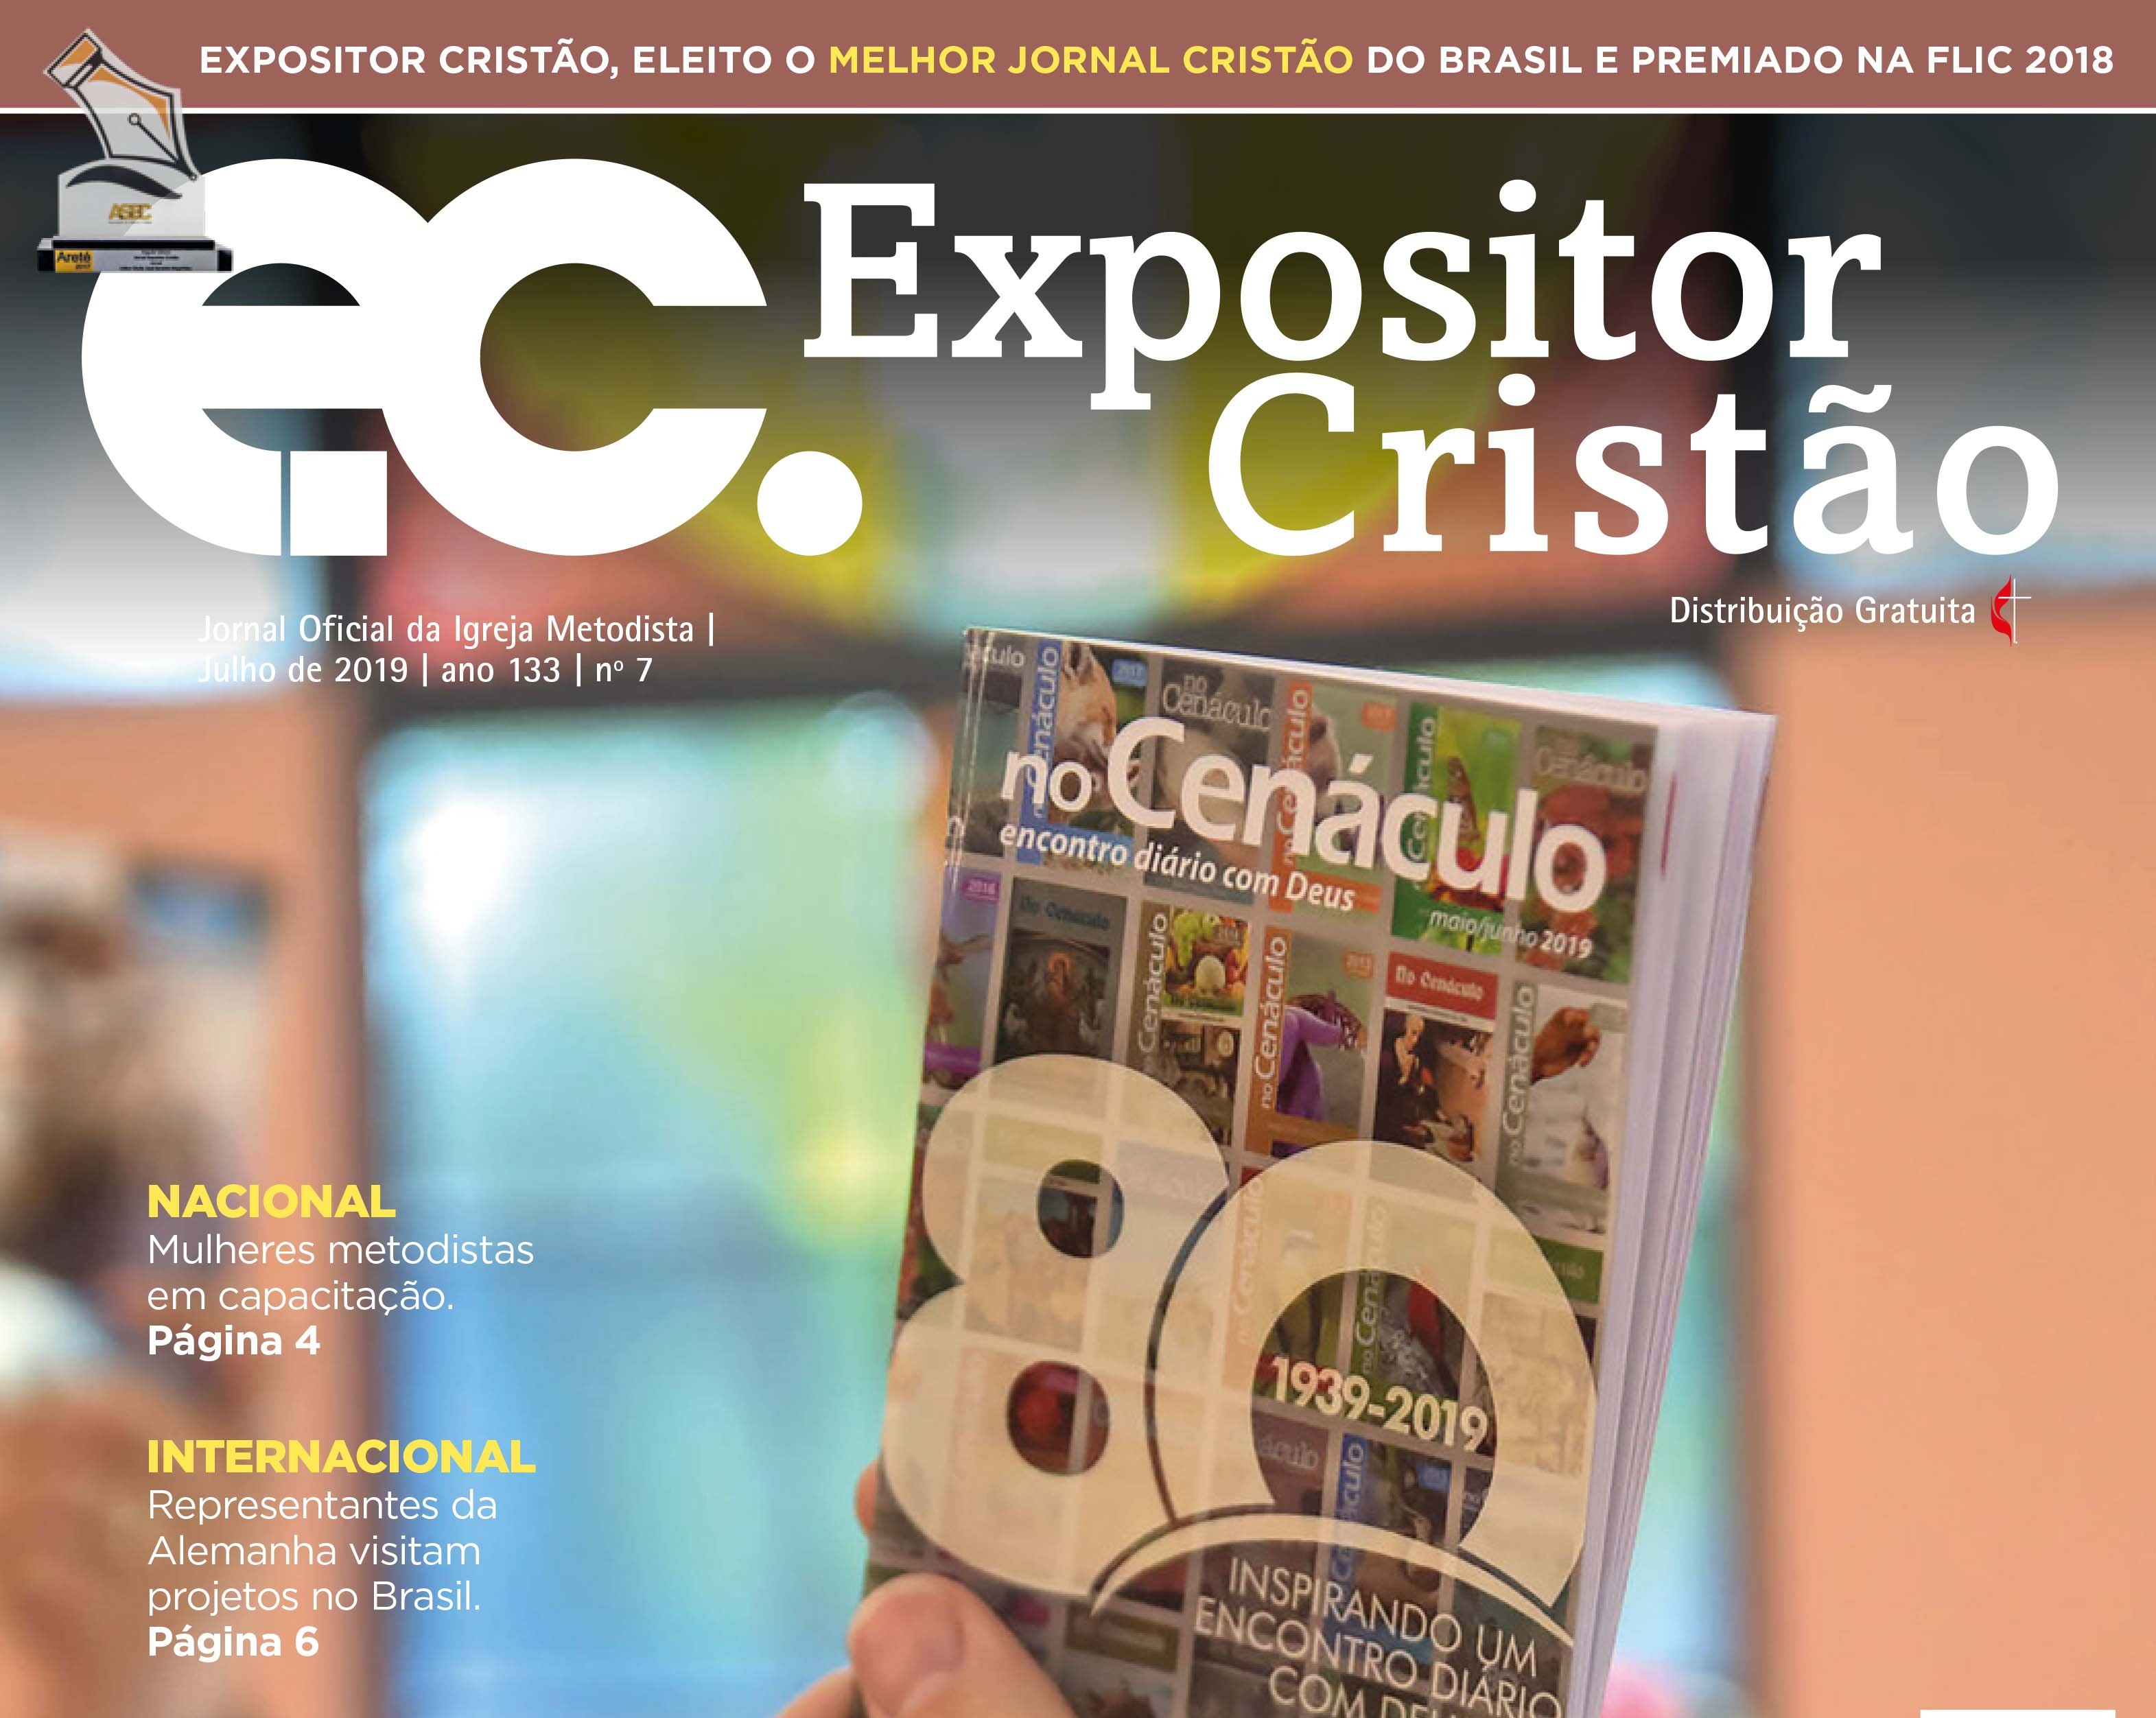 EC de julho 2019: no Cenáculo completa 80 anos de publicação no Brasil